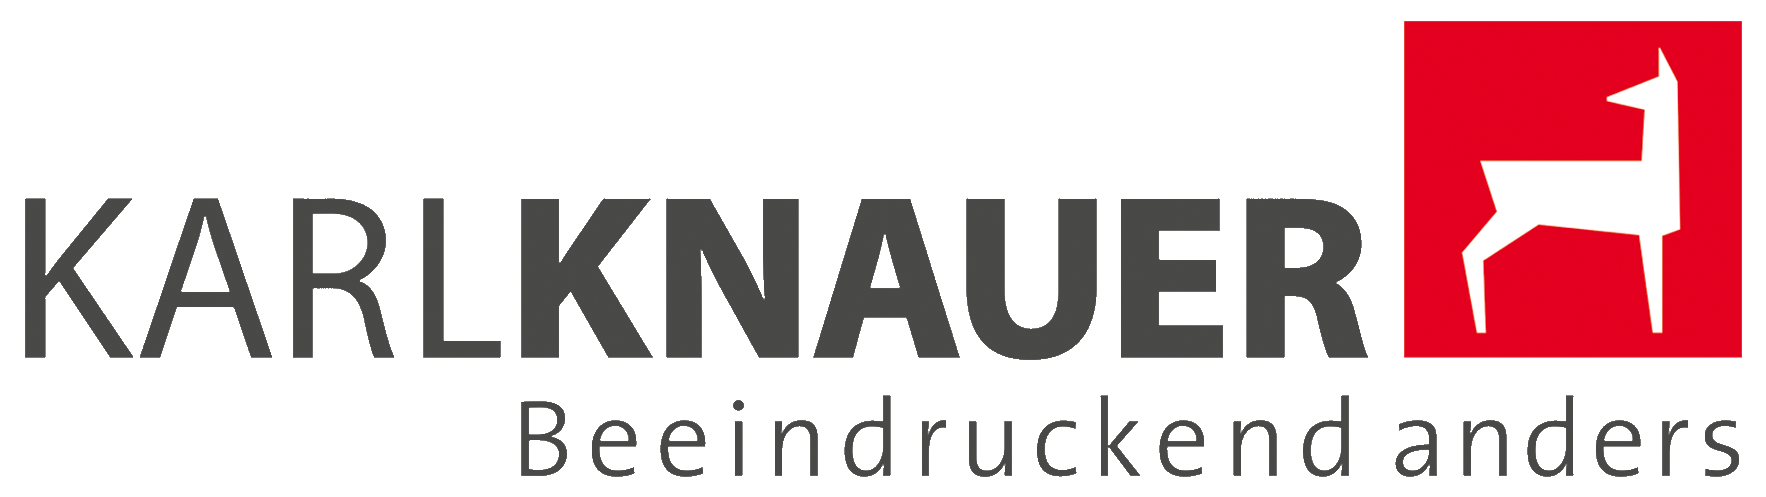 Karl Knauer Schriftzug mit dem Reh als Bildmarke und dem Claim "Beeindruckend anders"